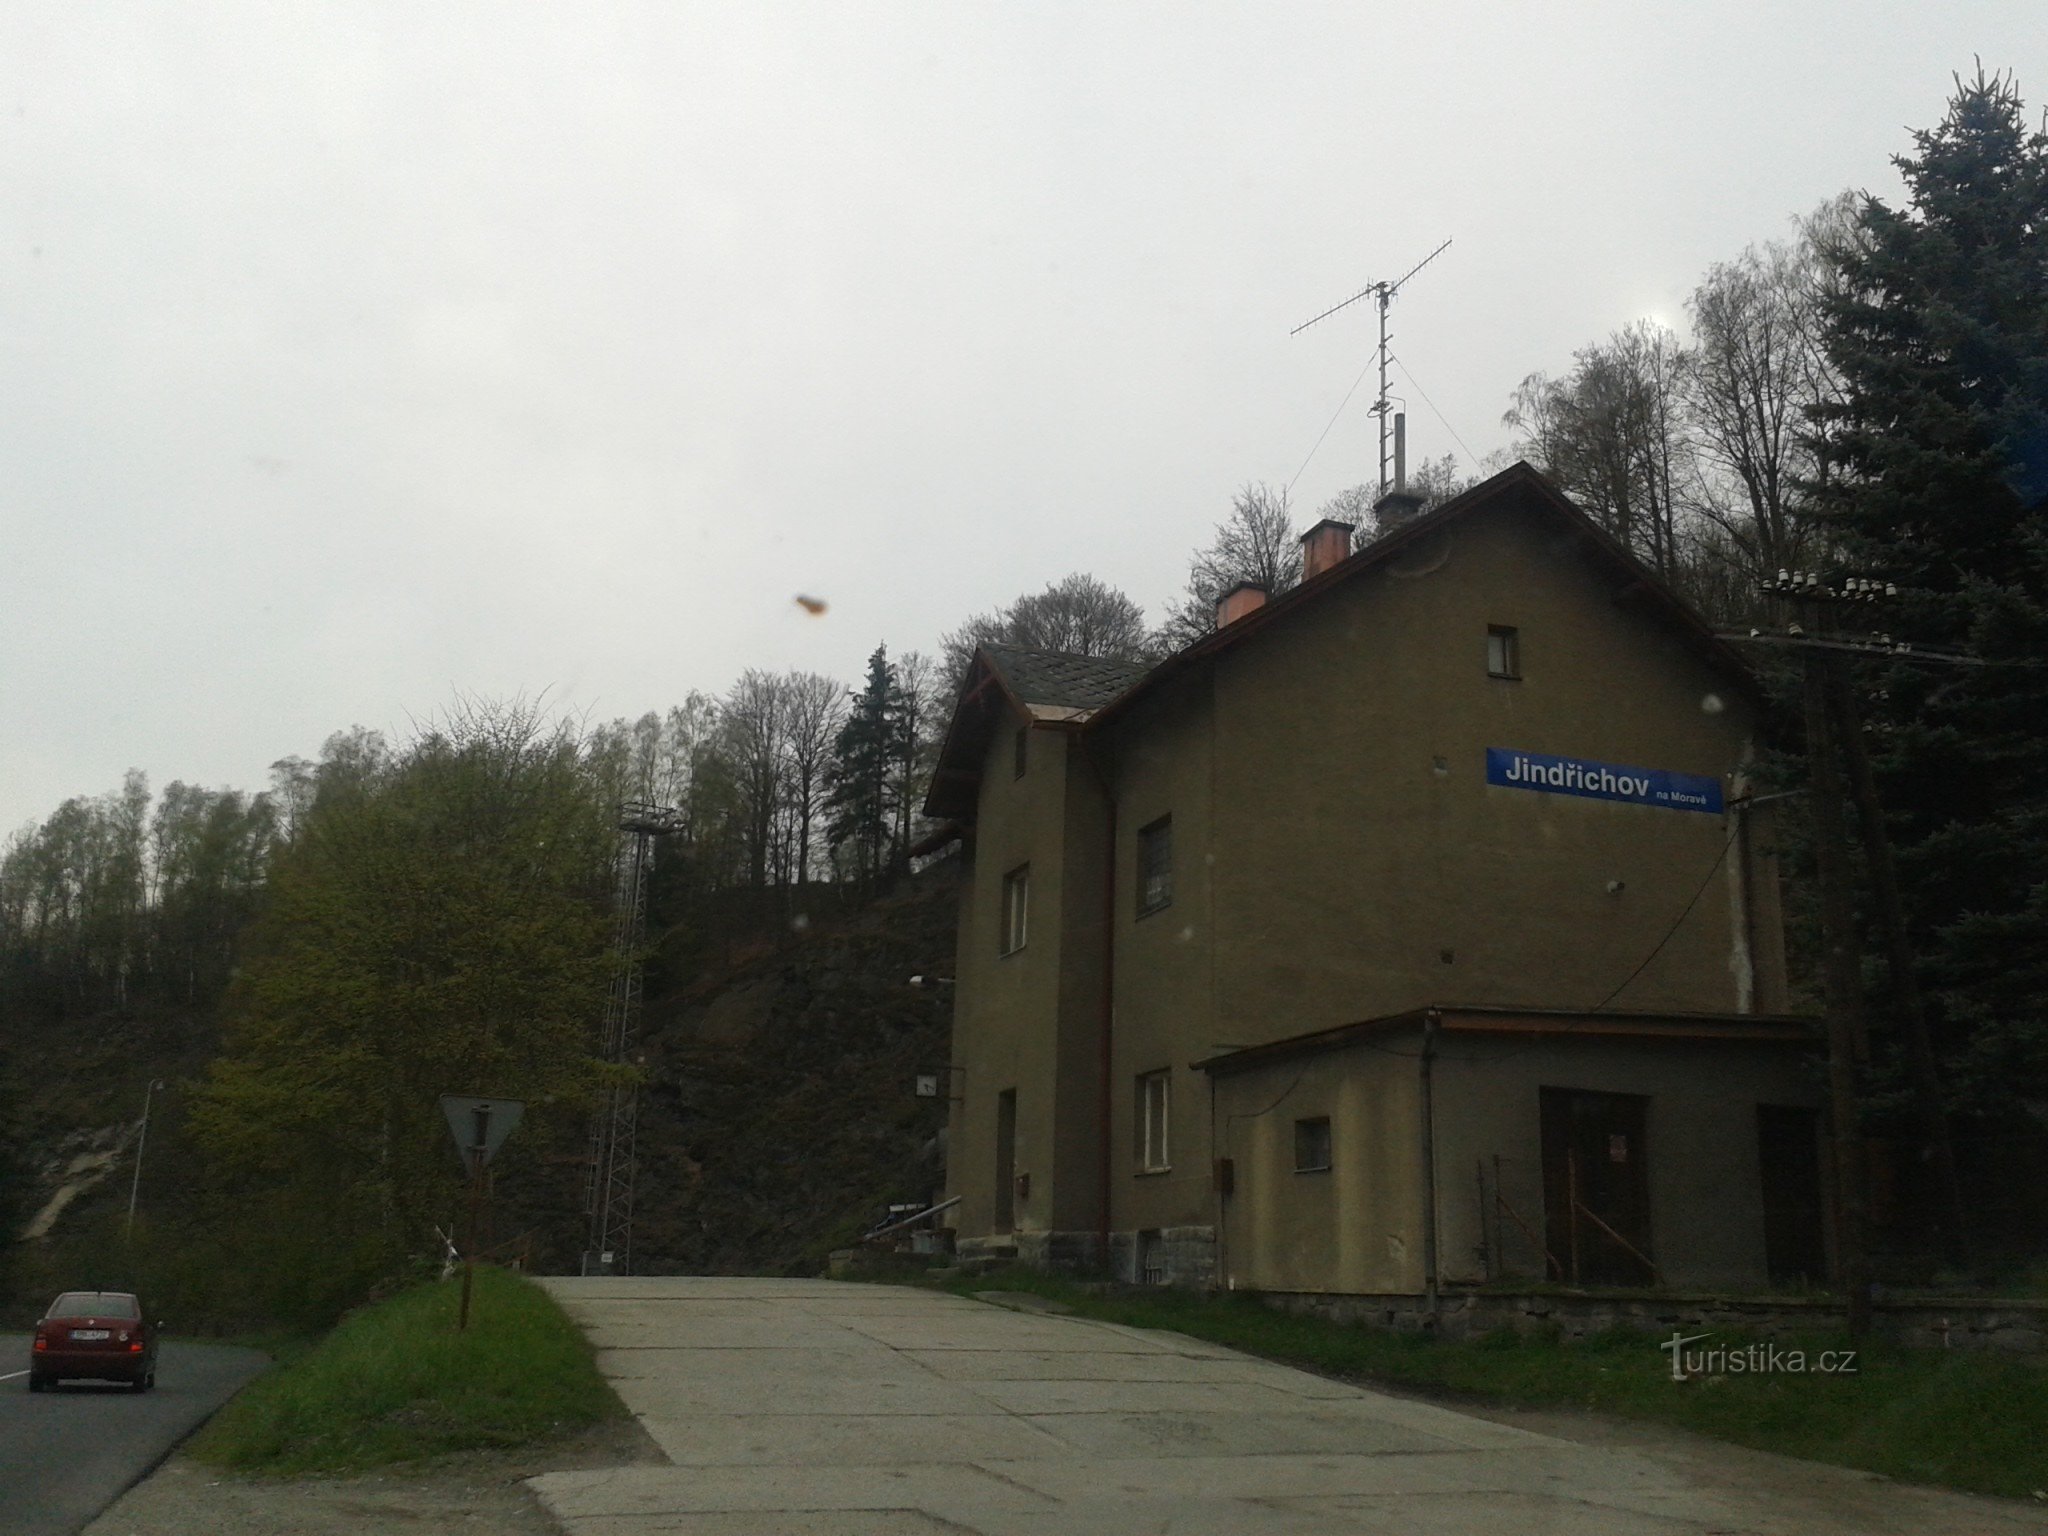 Jindřichov in Moravia - ex cartiera e stazione ferroviaria dove il tempo si è fermato, distretto di Šumperk